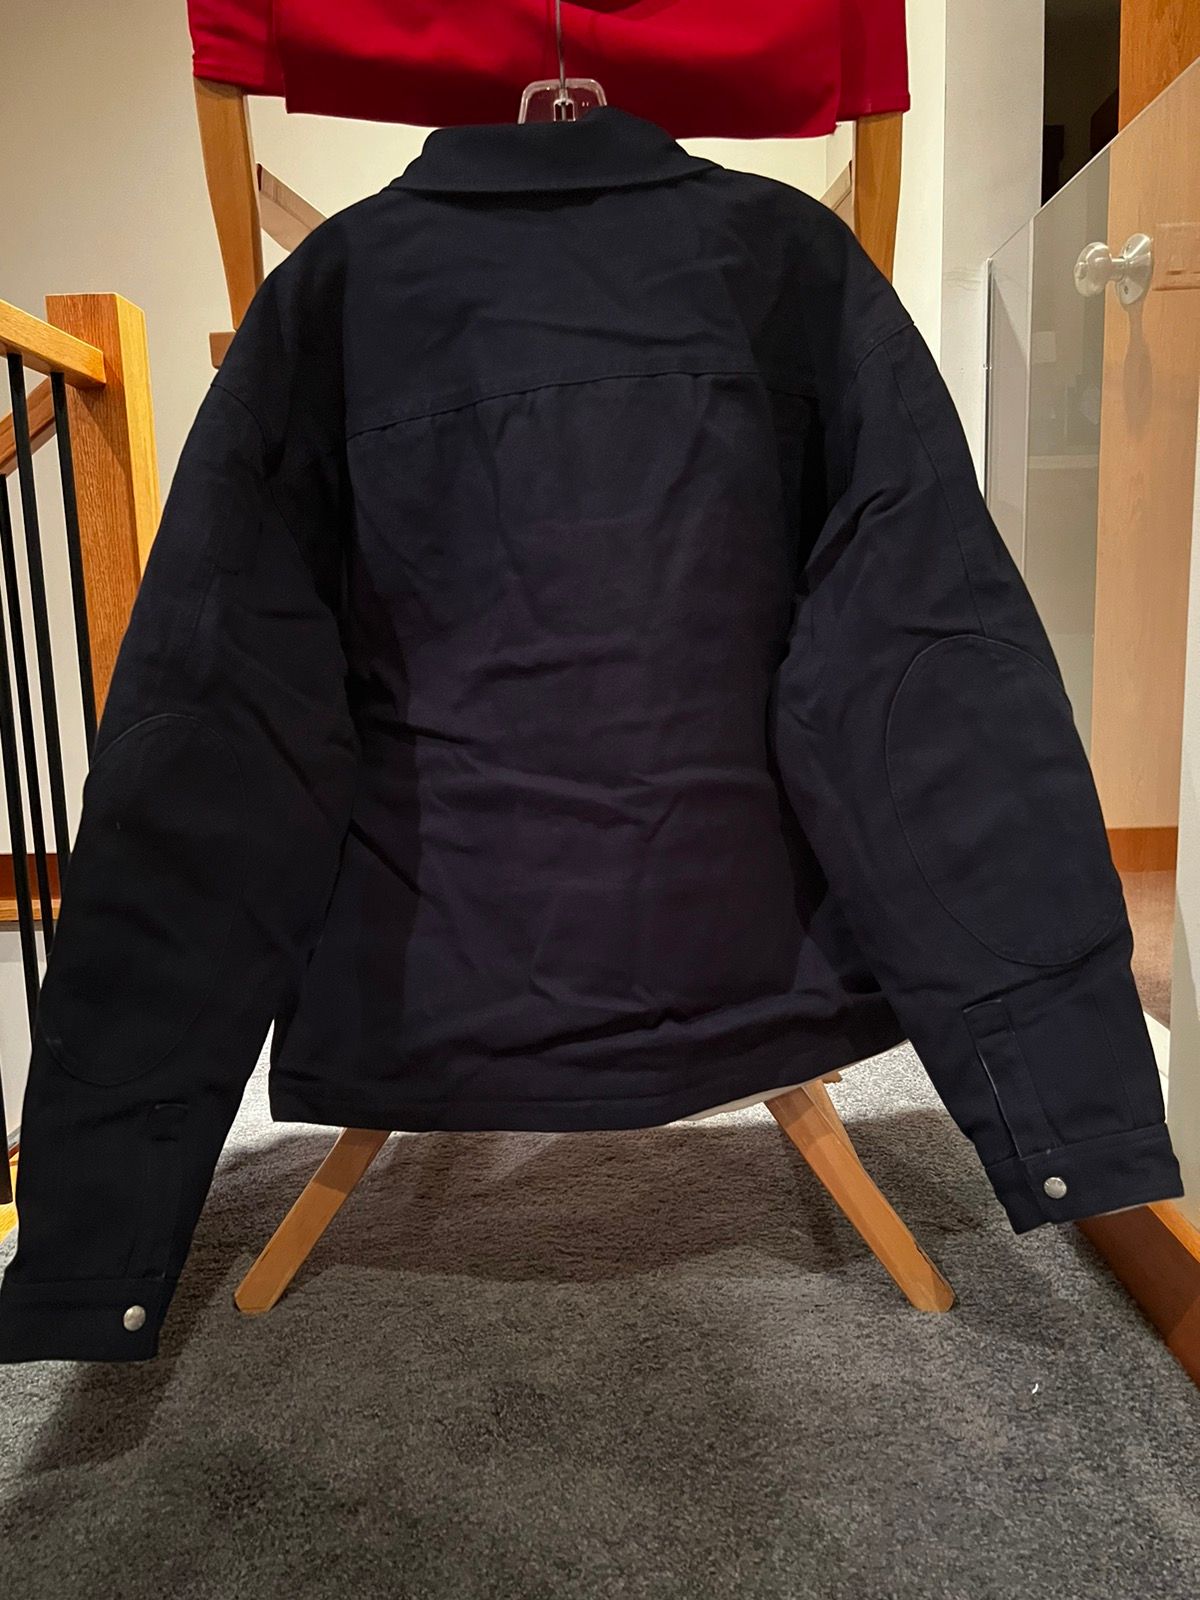 Palace Palace Reversible Canvas Fleece Jacket Size US XL / EU 56 / 4 - 4 Thumbnail